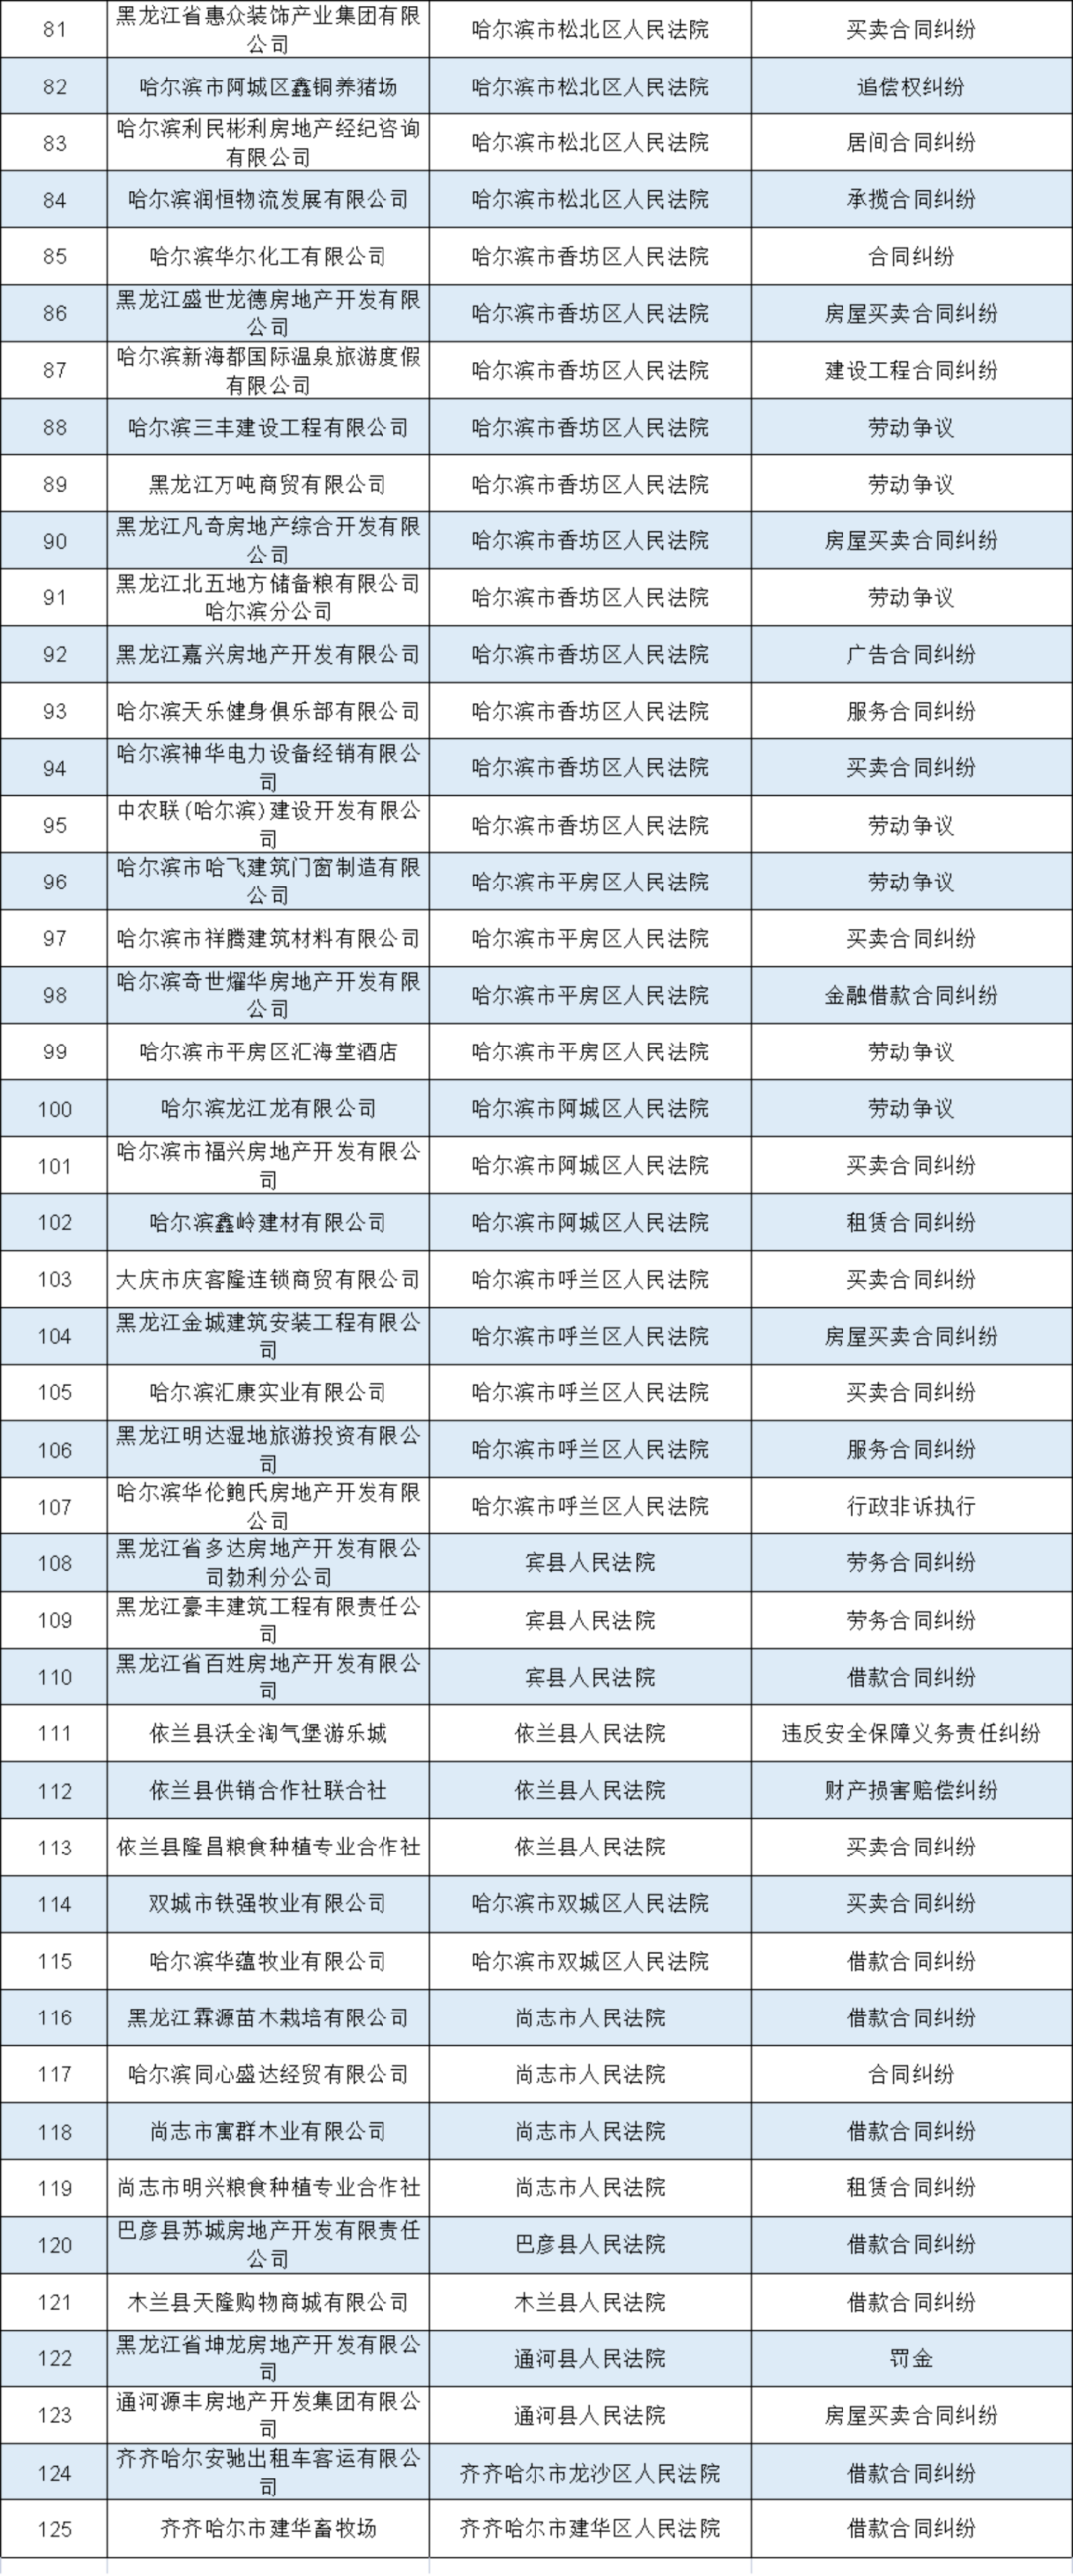 黑龙江高院公布2021年第八批失信被执行人名单